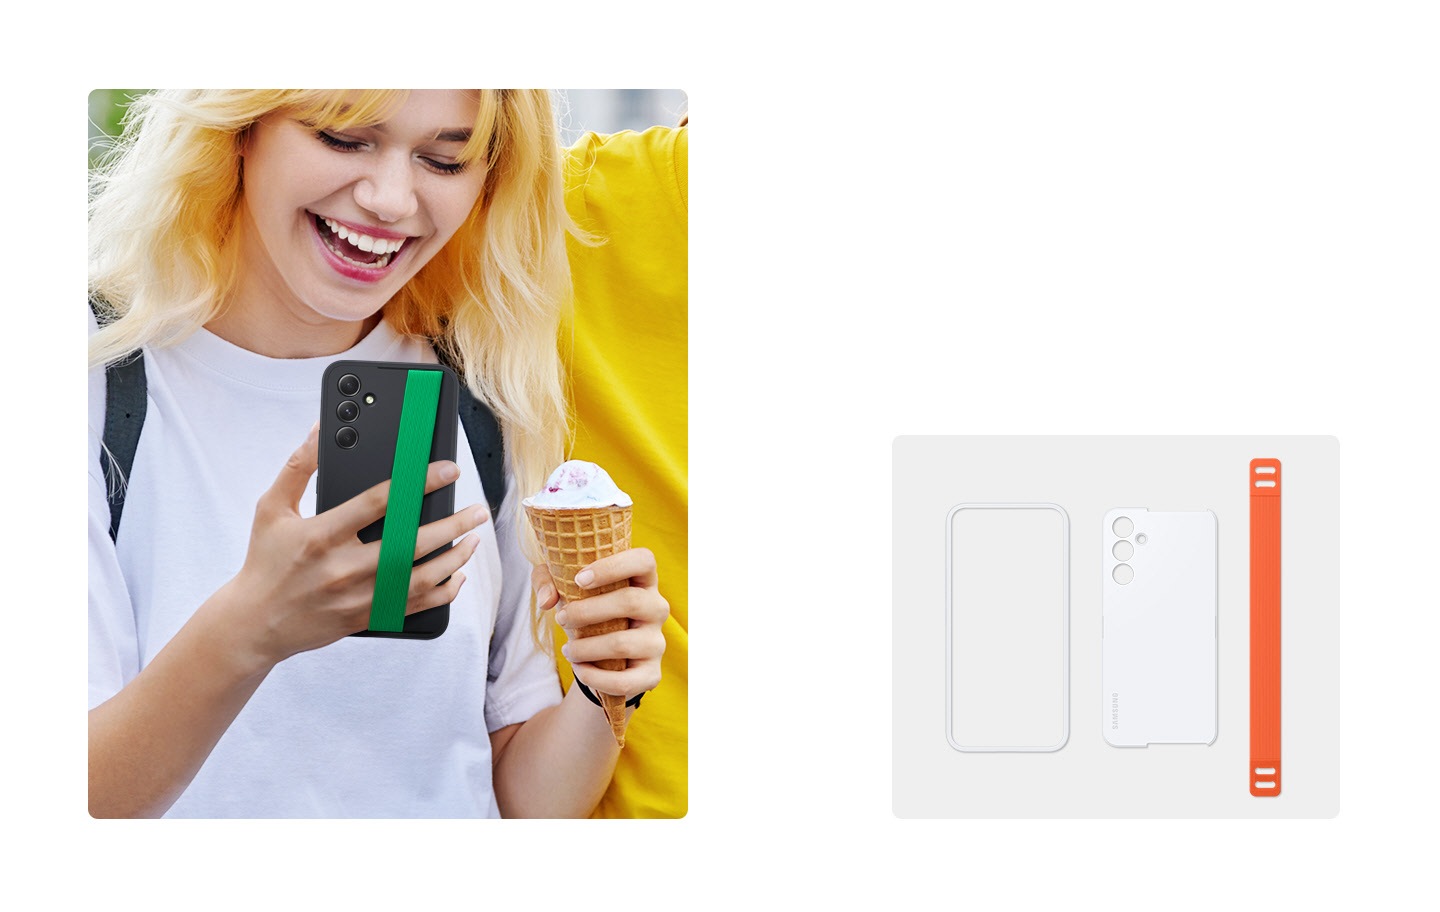 Auf der linken Seite schaut eine lächelnde Frau auf ihr Galaxy Gerät, das ein schwarzes Haze Grip Case mit grünem Band trägt, während sie in der anderen Hand eine Eistüte hält. Auf der rechten Seite sind der Rahmen und die Rückwand eines weißen Haze Grip Case sowie ein orangefarbenes Band aufgereiht.